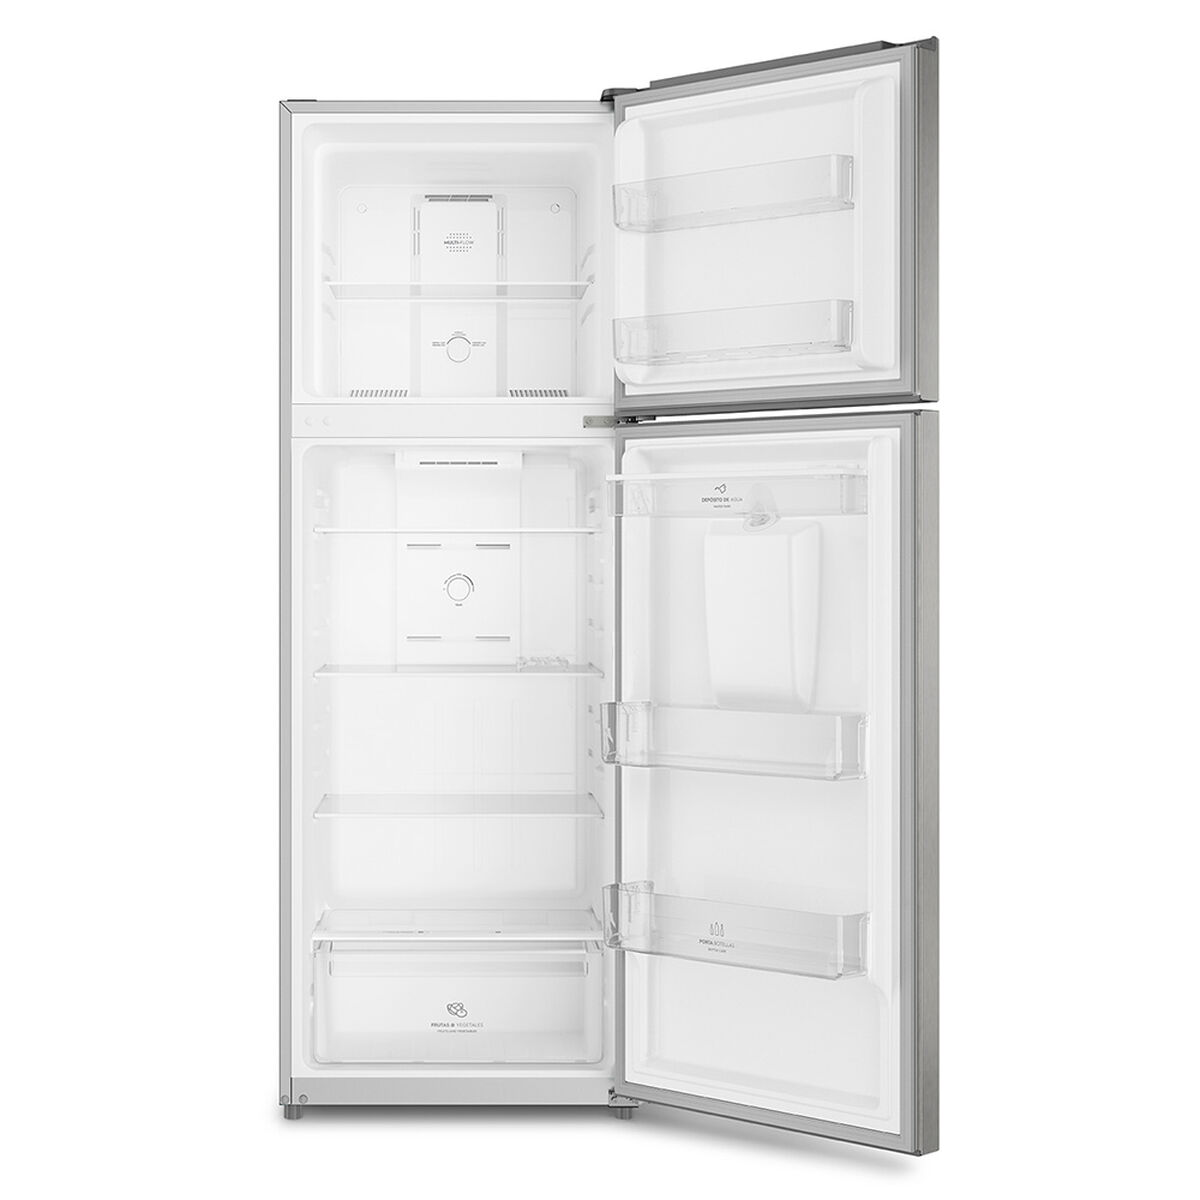 Refrigerador No Frost Mademsa Altus 1350W 342 lts.